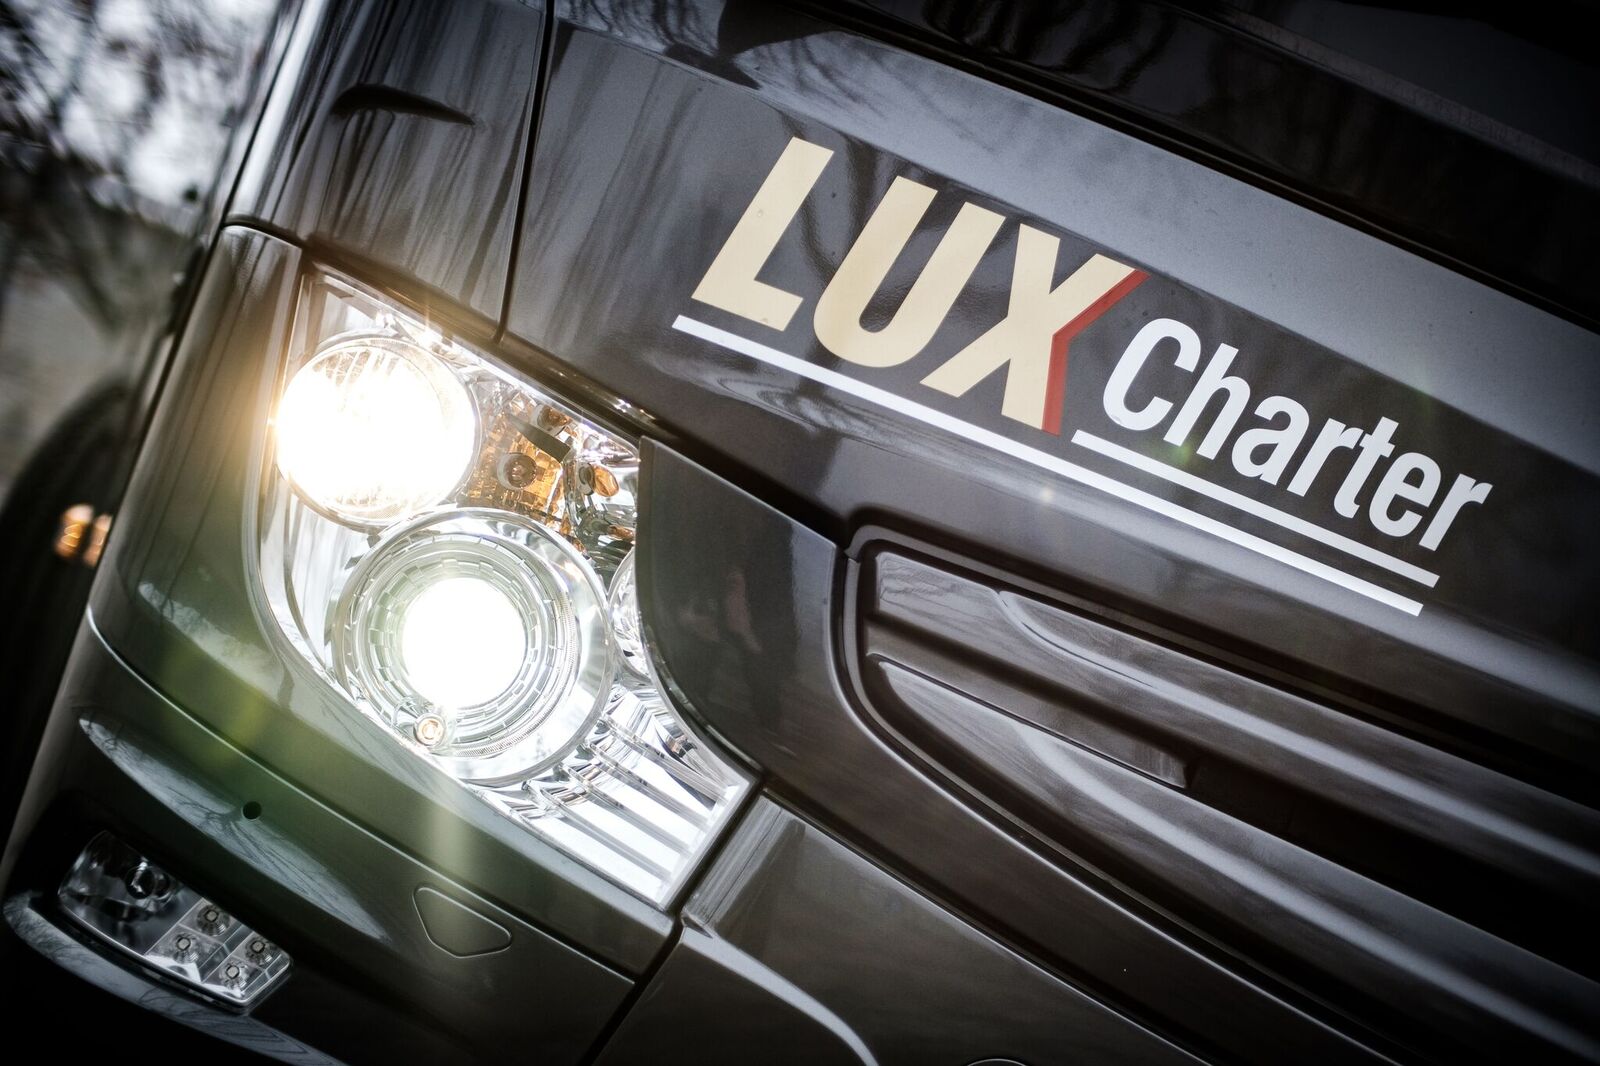 Lux Charter bussid, kvaliteetne ja turvaline tellimusvedu